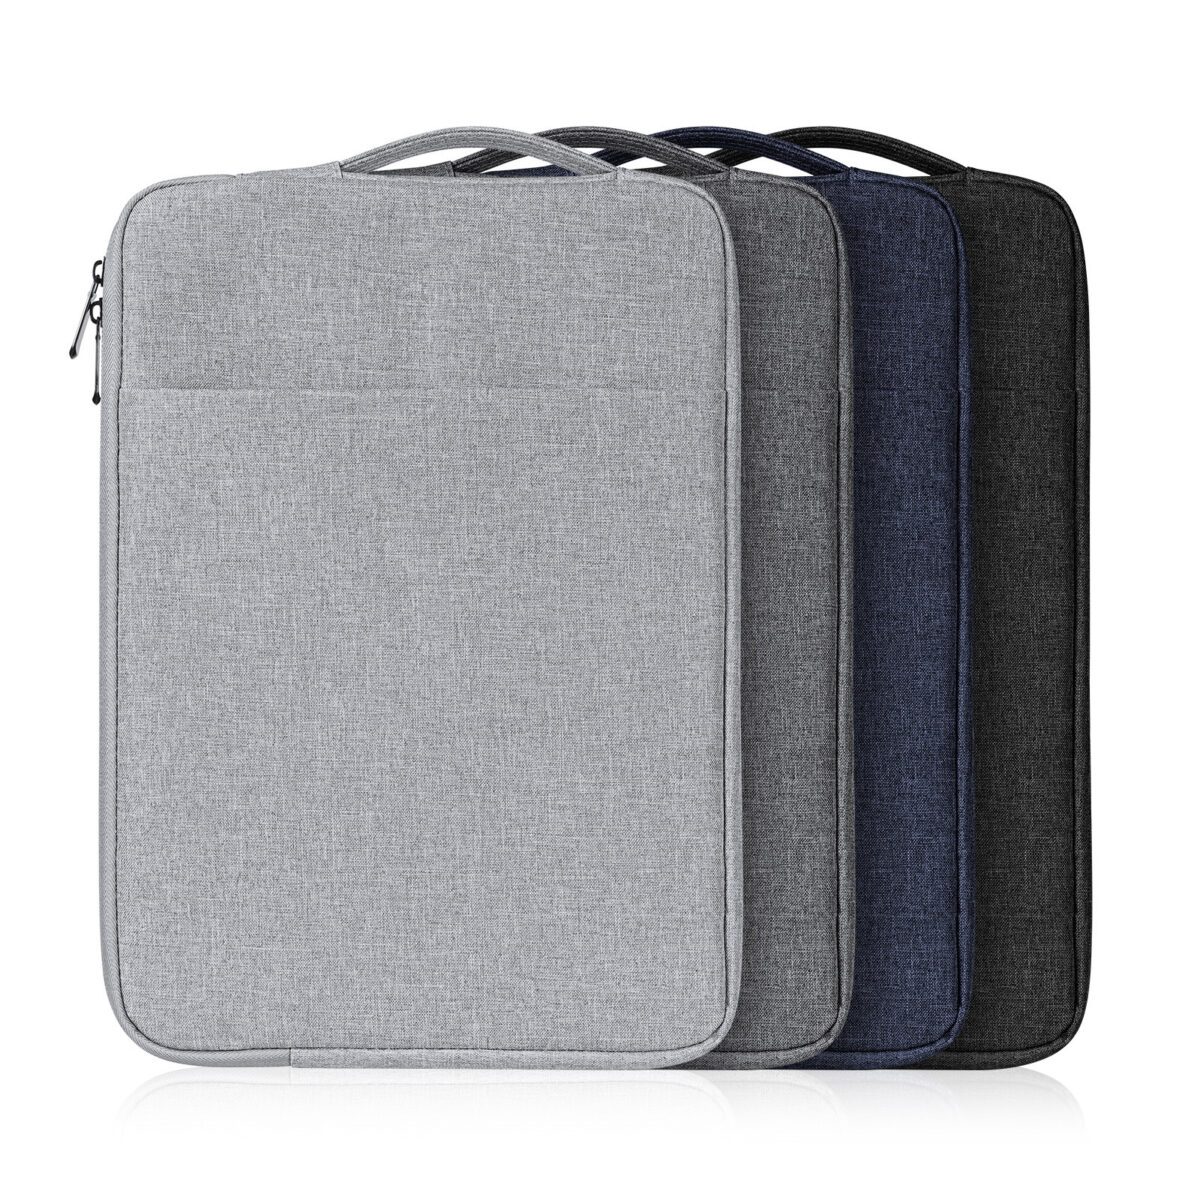 LBDC Series Sleeve for Laptop, MacBook, Notebook, Tablet